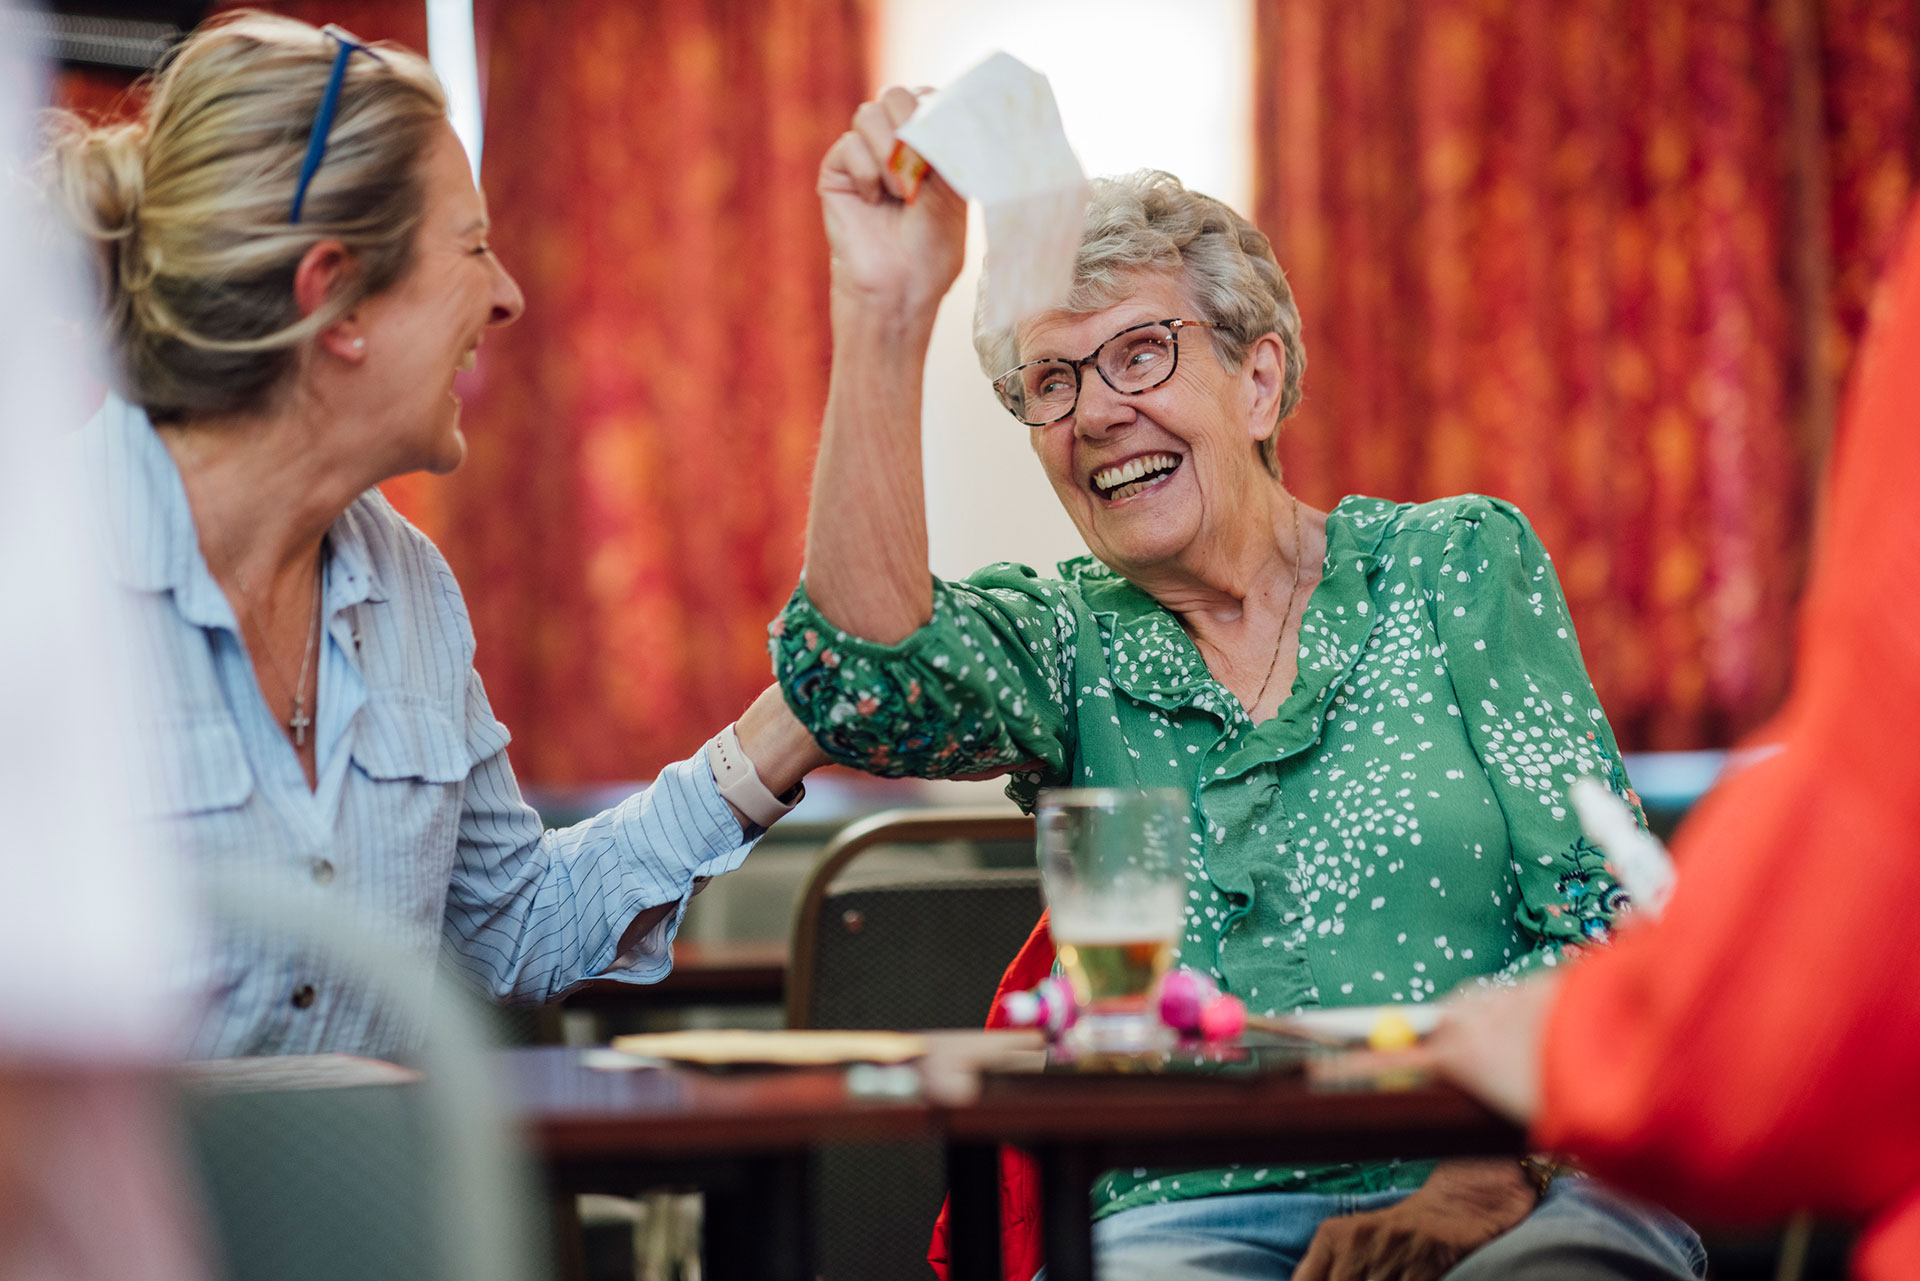 La toma de conciencia comienza en el hogar y entornos cercanos, valorando y compartiendo momentos de calidad con personas de edad avanzada